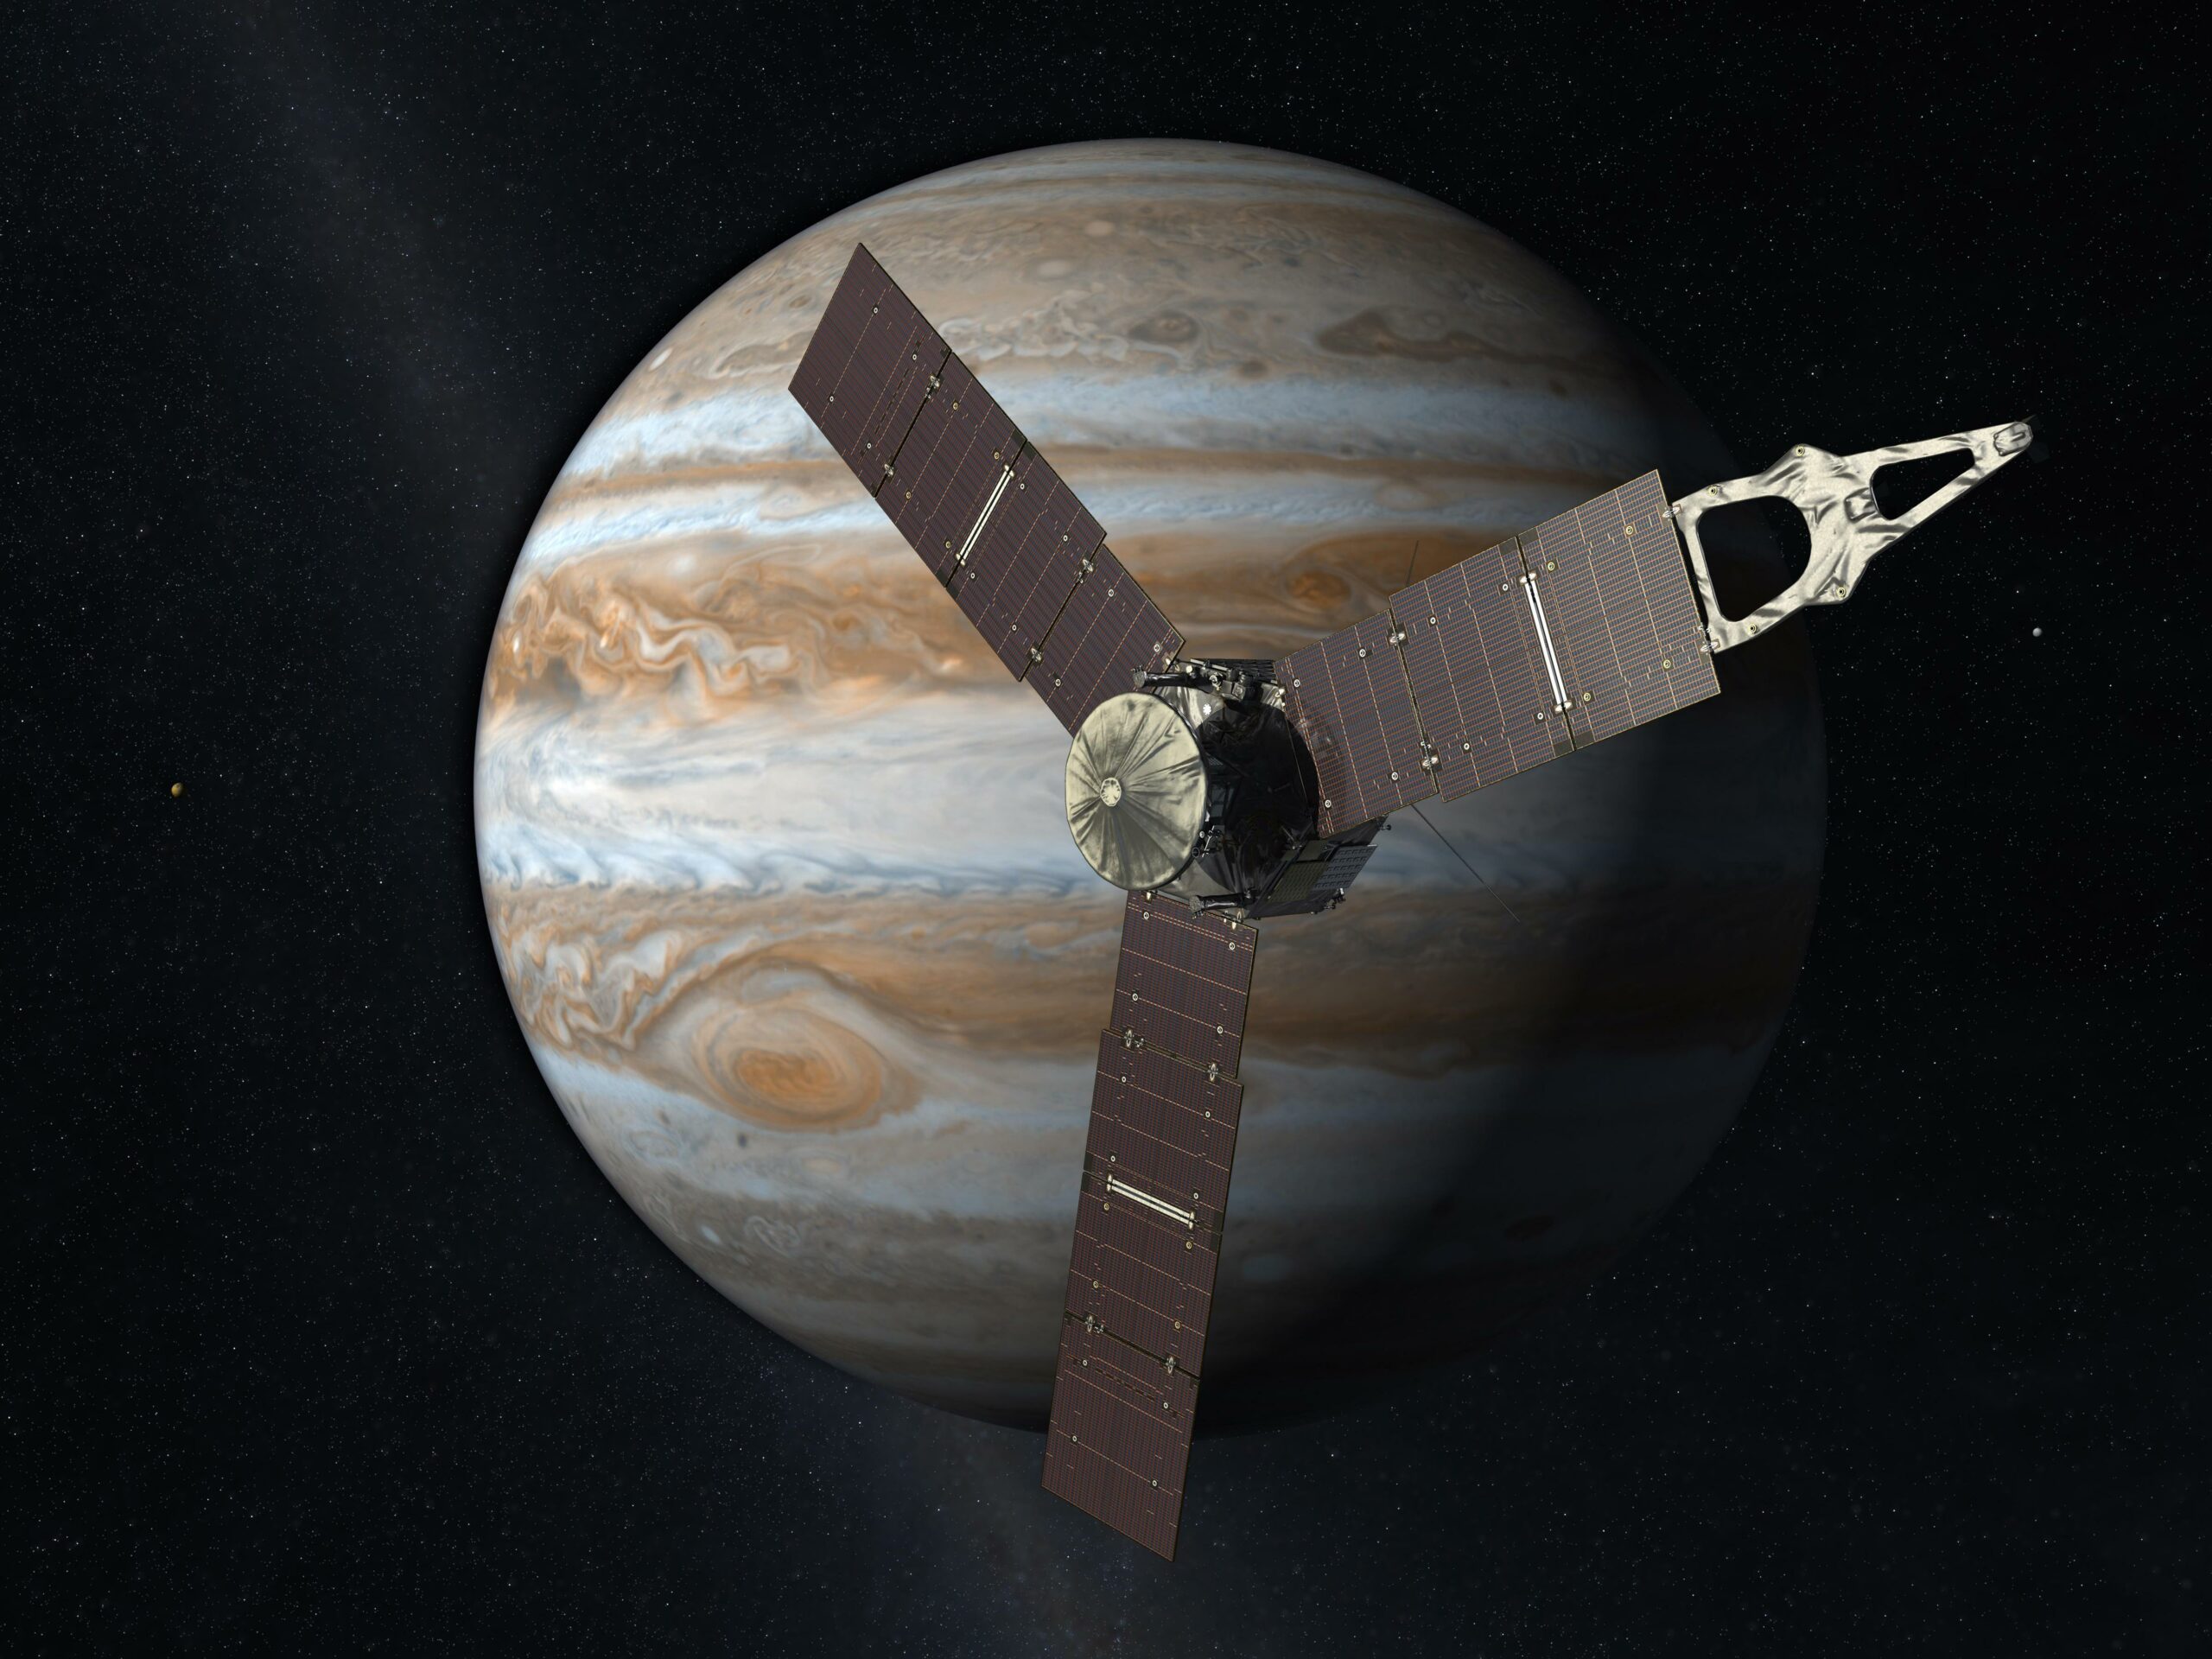 Зонд Juno впервые напрямую зафиксировал источник радиосигнала на орбите Юпитера